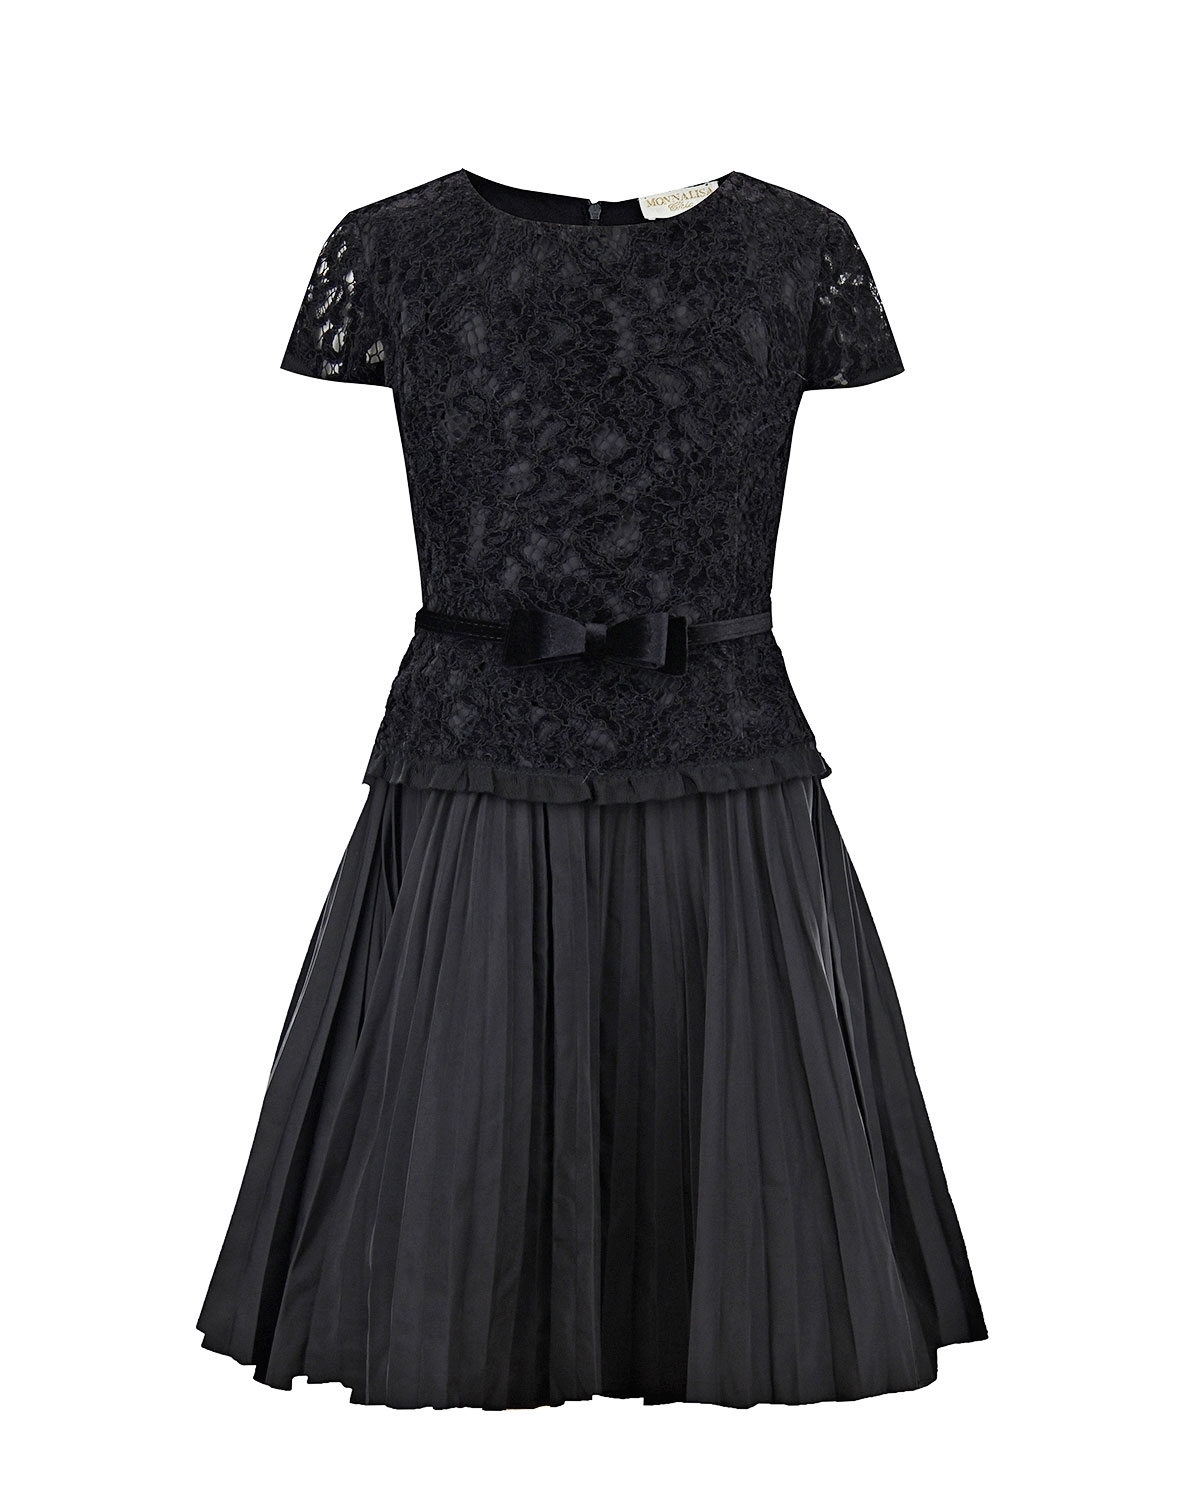 Черное платье с кружевной отделкой Monnalisa детское - фото 1